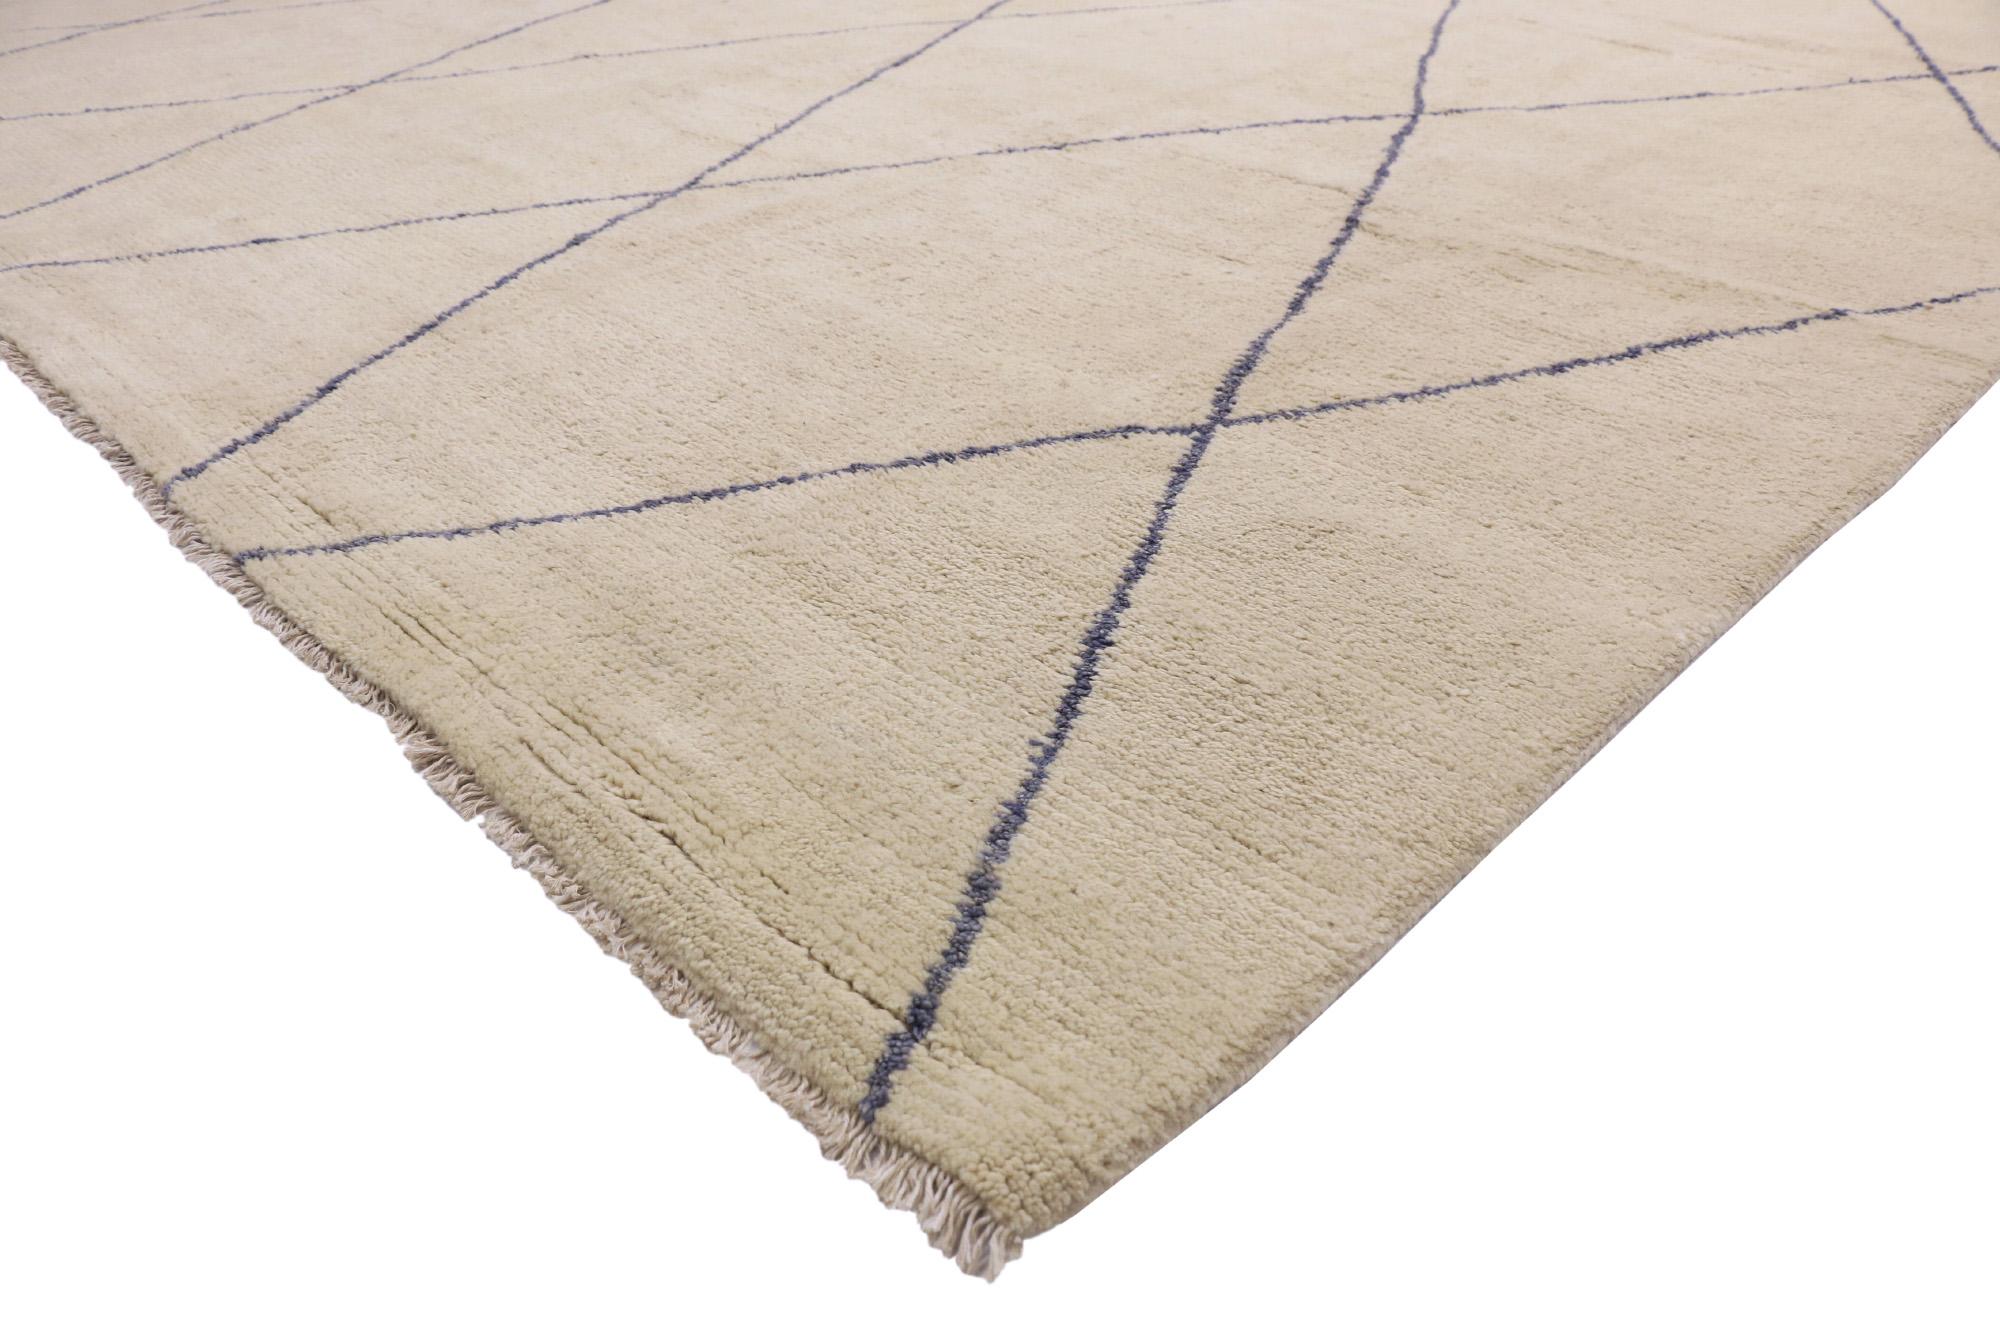 80506 New Modern Moroccan Area Rug, 12'01 x 15'10. Les tapis marocains pakistanais sont fabriqués au Pakistan et s'inspirent des designs et motifs traditionnels des tapis marocains. Ils présentent généralement des motifs géométriques, des couleurs